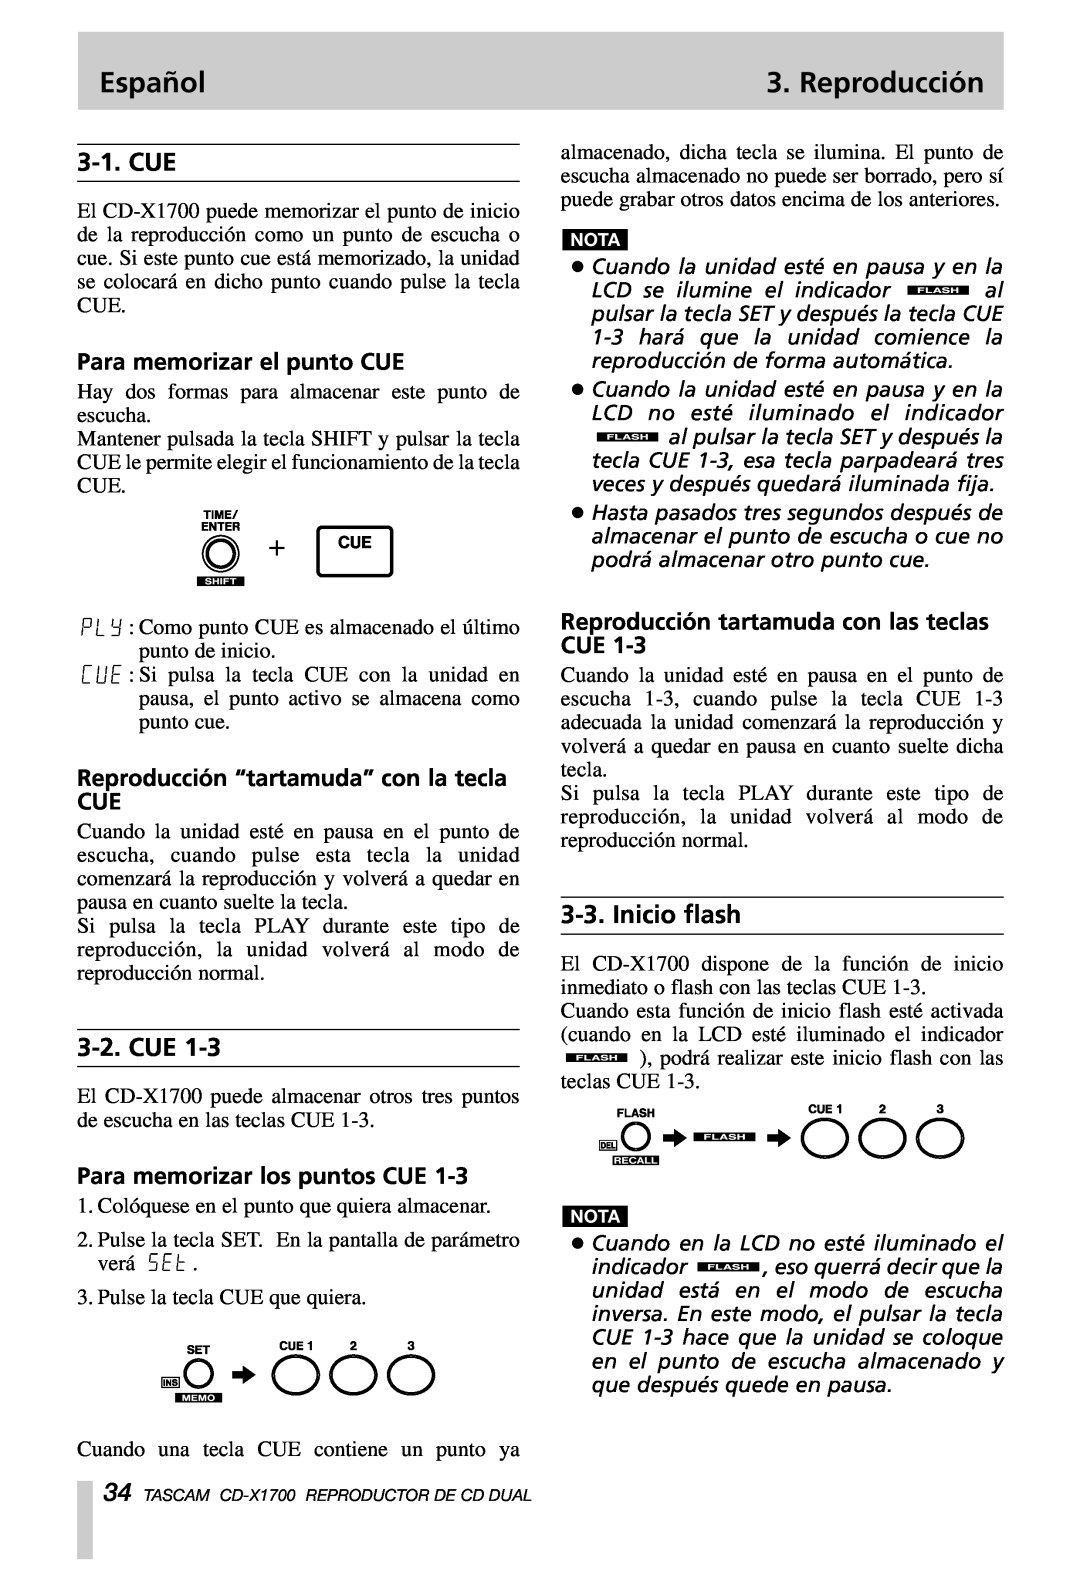 Tascam CD-X1700 Inicio flash, Para memorizar el punto CUE, Reproducción “tartamuda” con la tecla CUE, Español, 3-1.CUE 